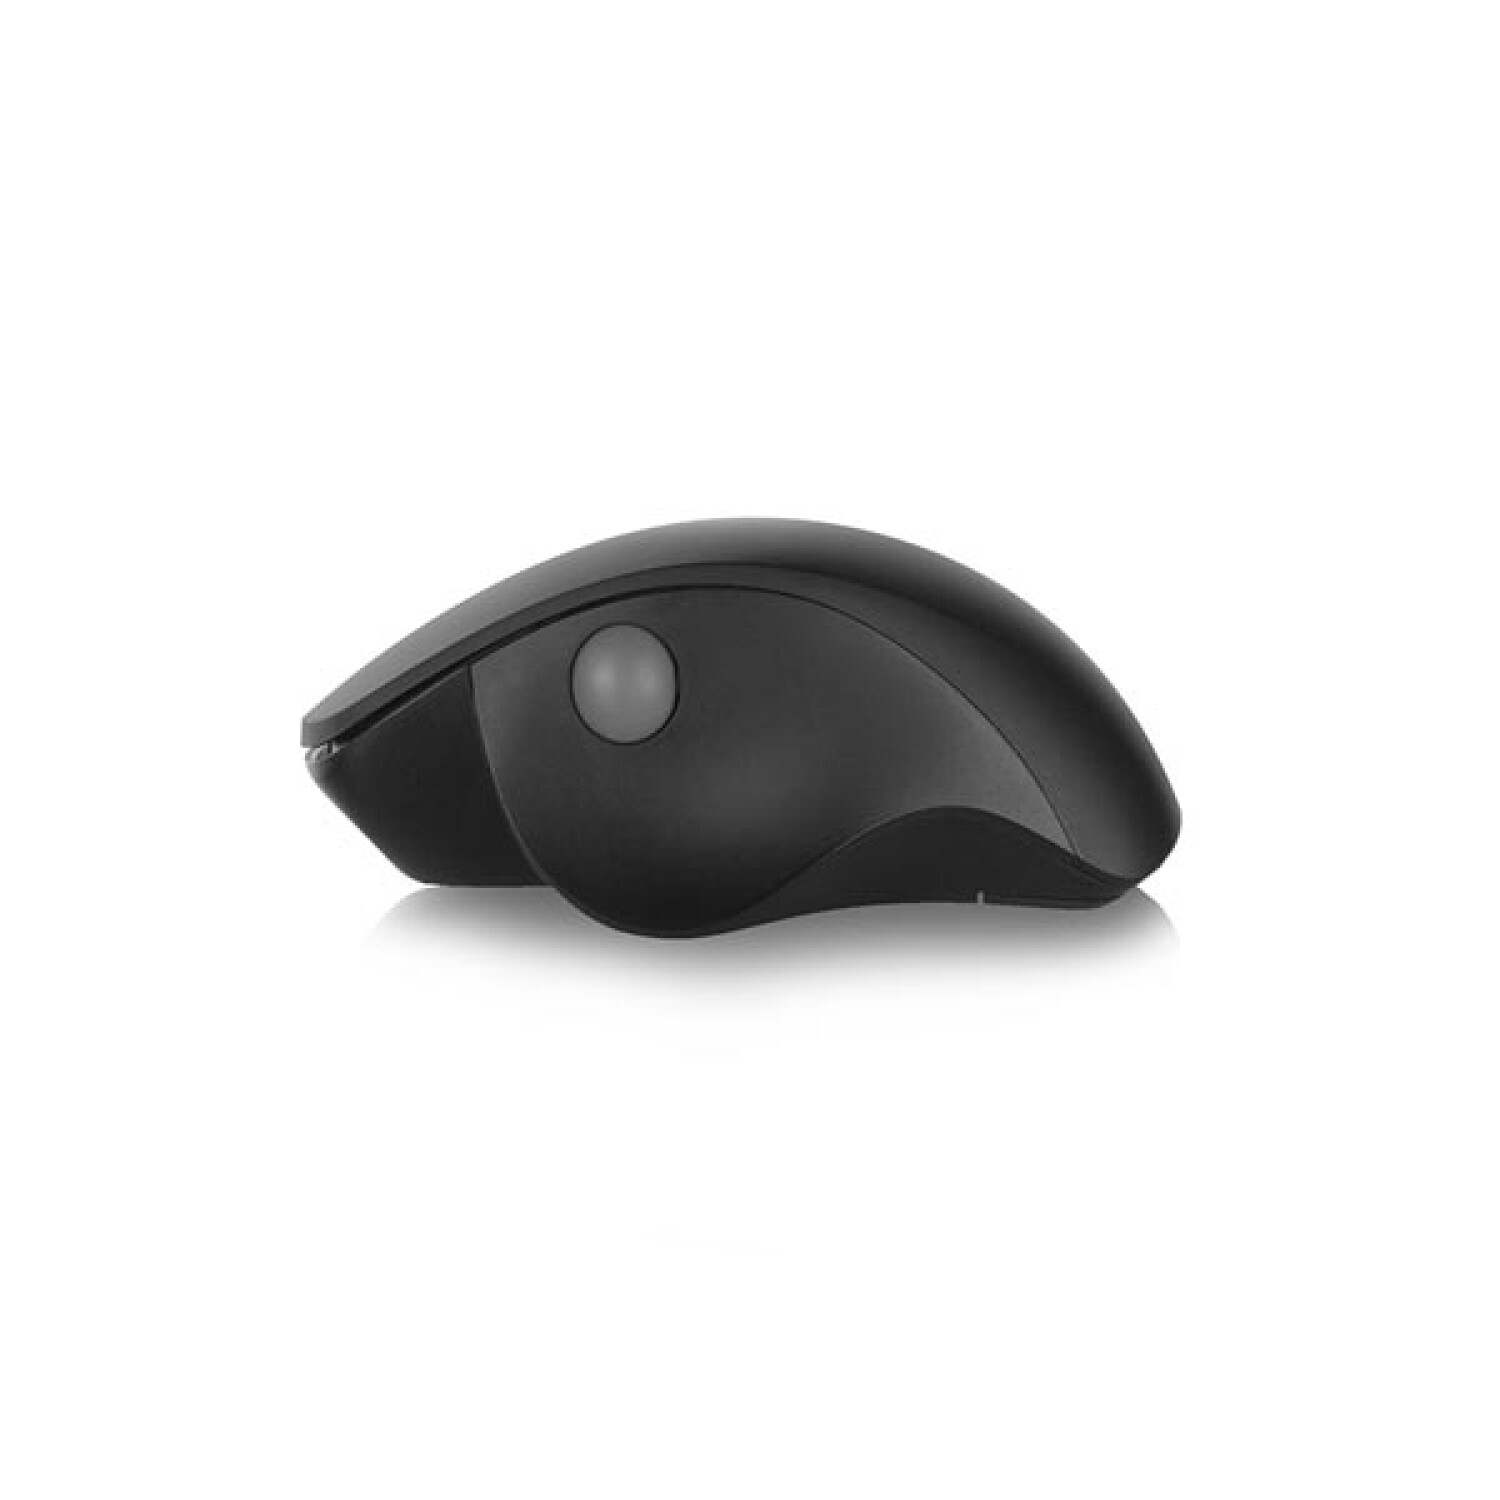 EWENT Schnurlose Mouse Schwarz Wireless Maus